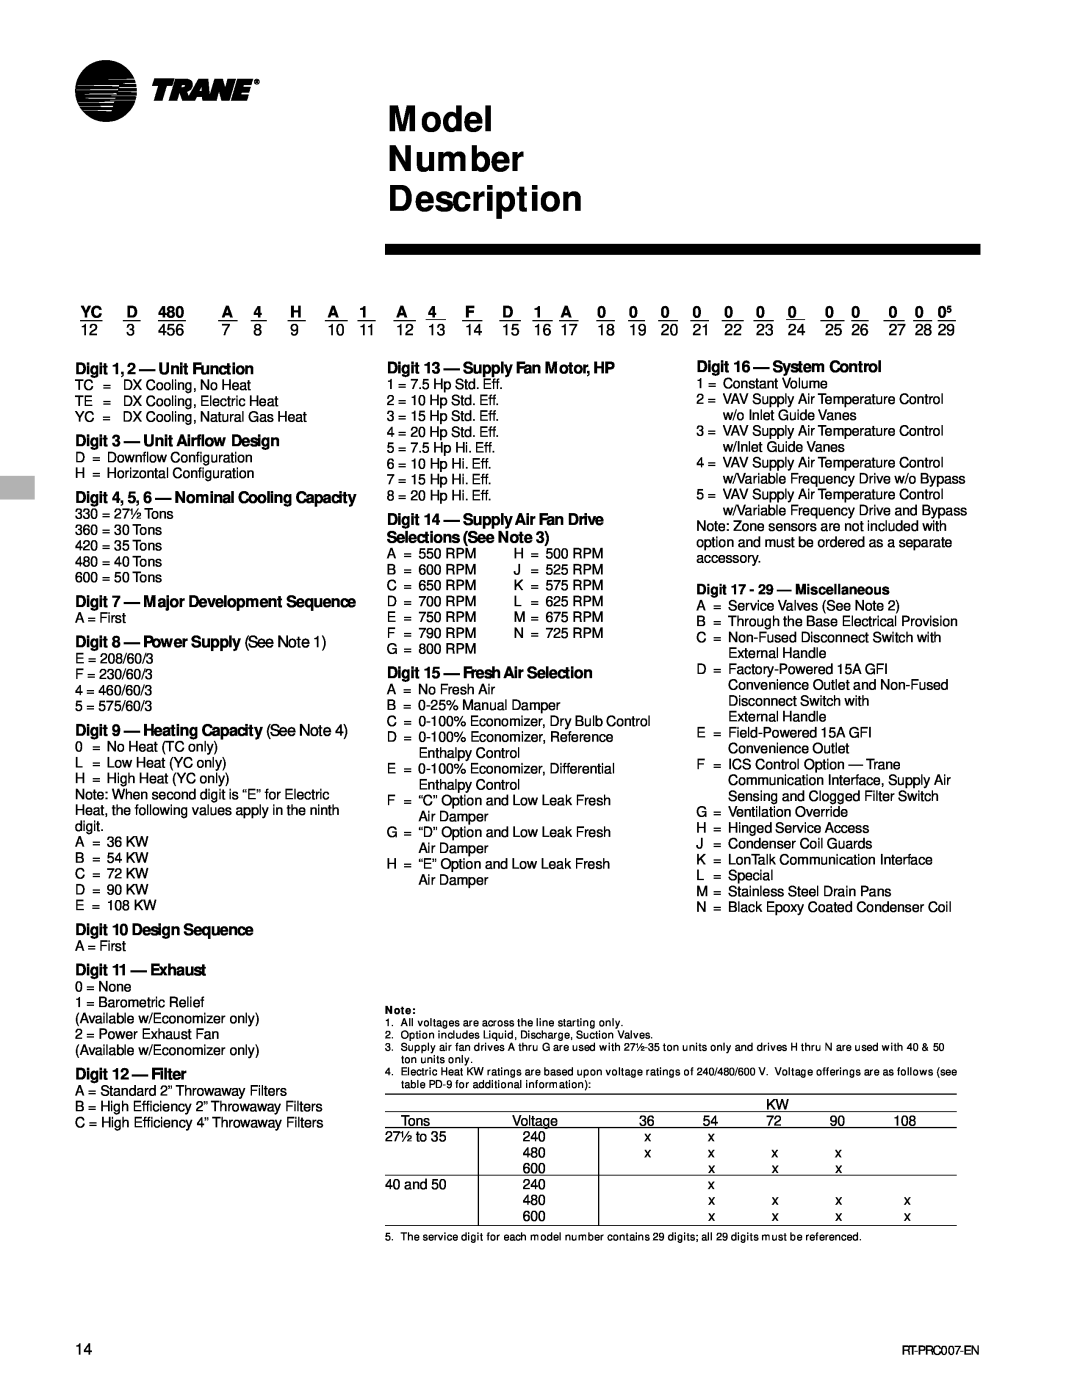 Trane RT-PRC007-EN Model Number Description, Digit 1, 2 - Unit Function, Digit 3 - Unit Airflow Design, Digit 11 - Exhaust 